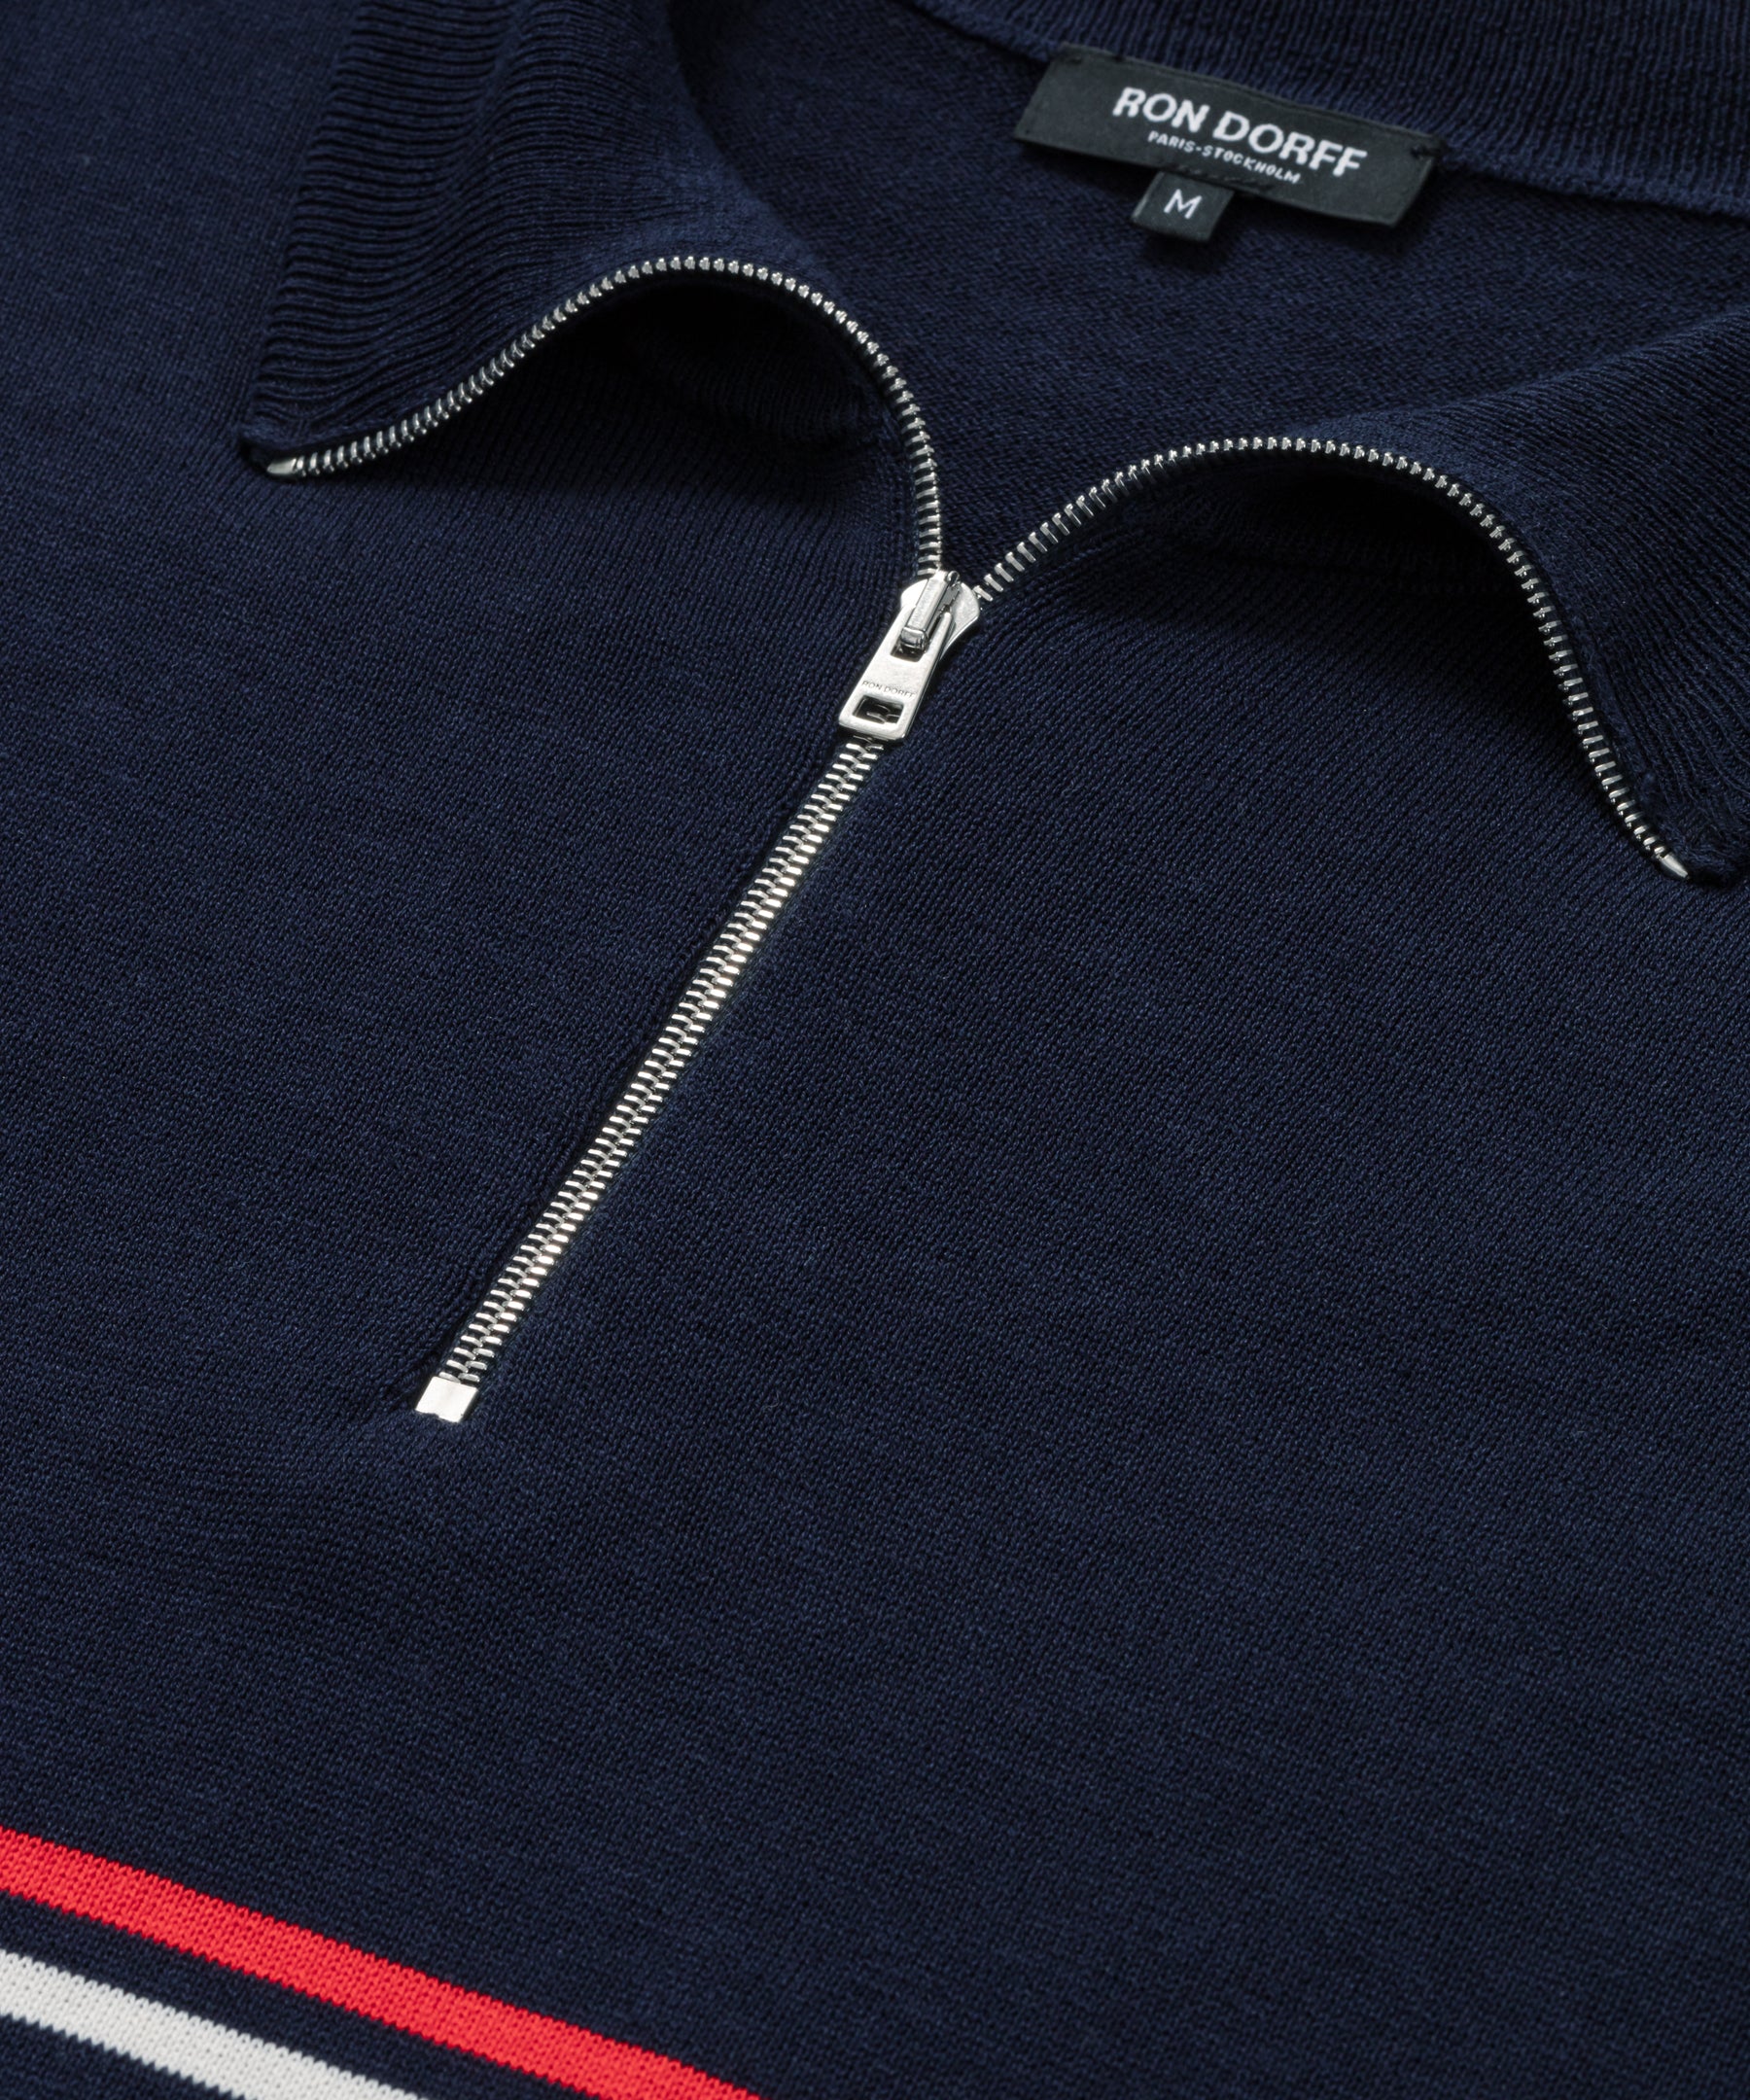 Polo en coton soie avec bandes rayées: Bleu marine